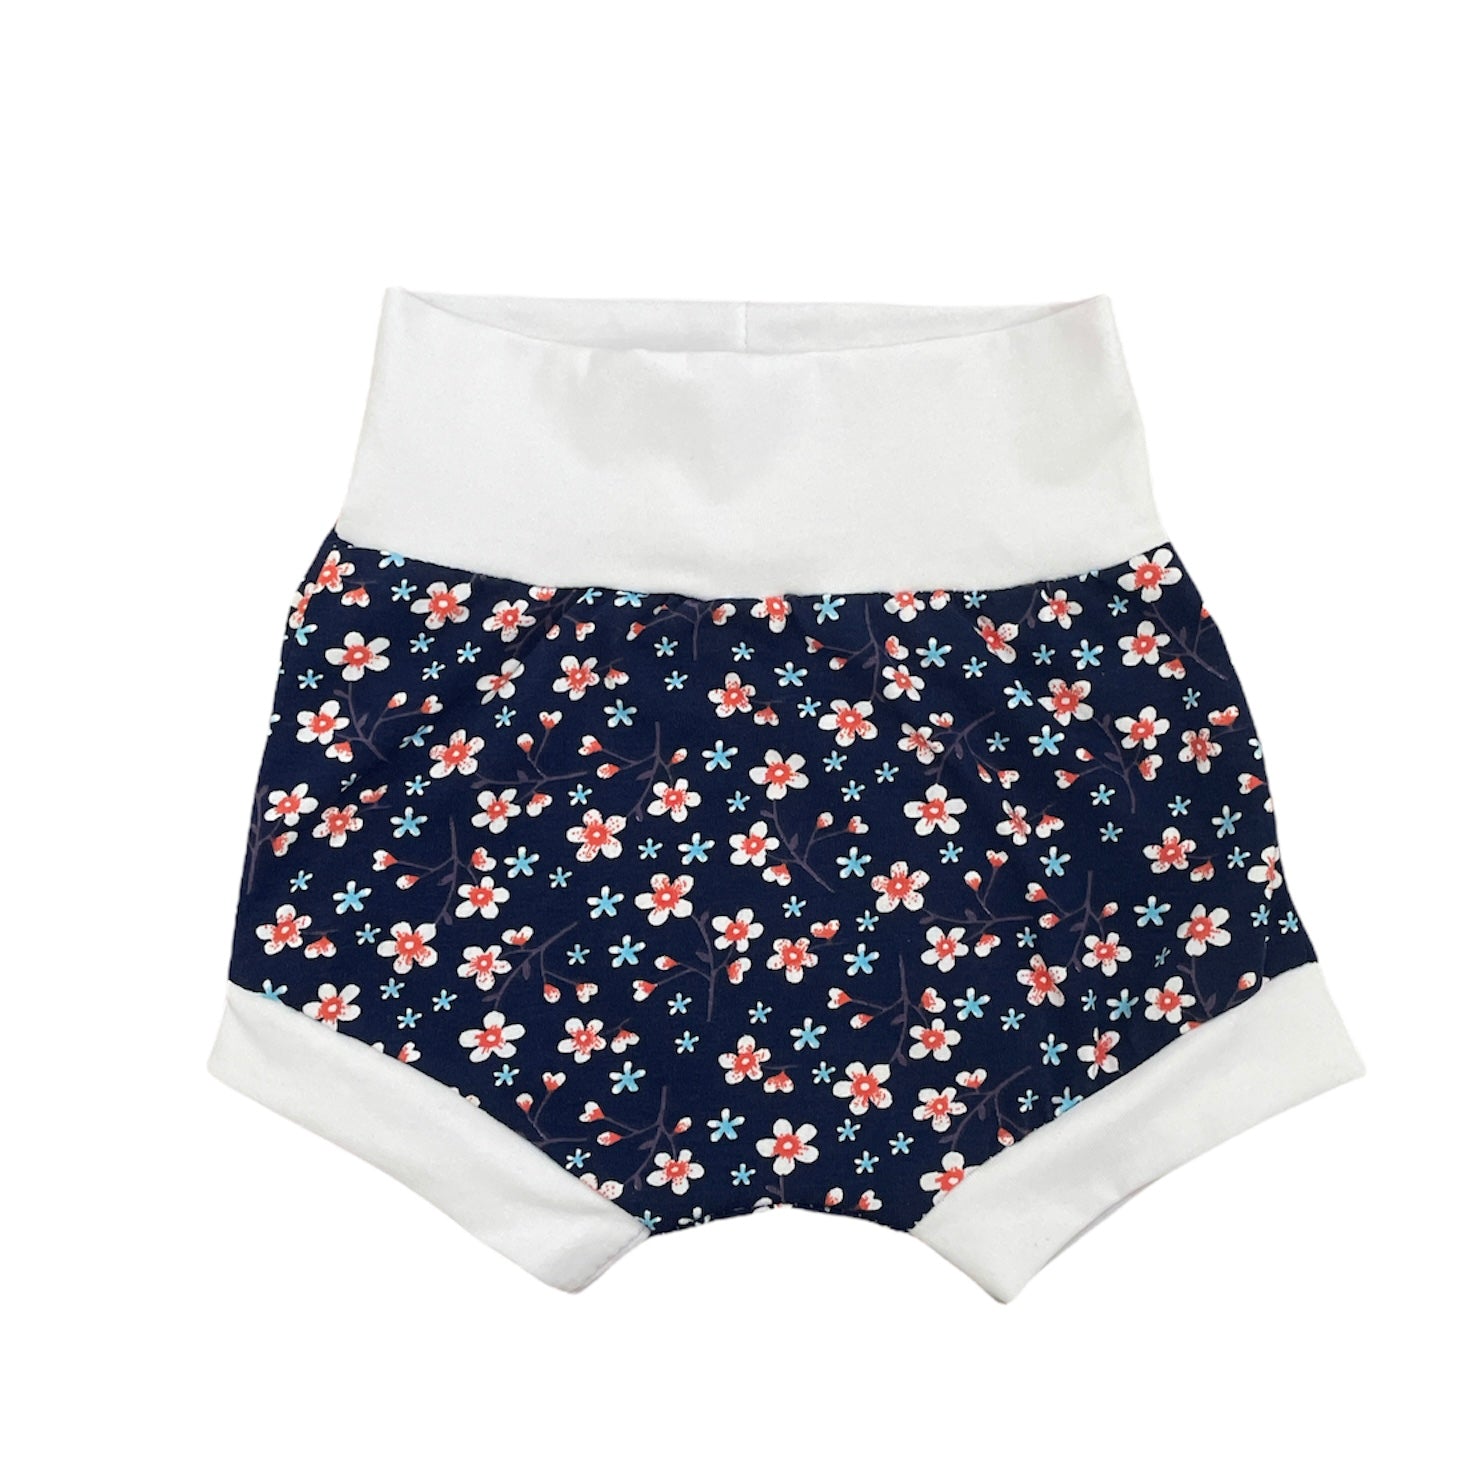 Coral daisy harem shorts